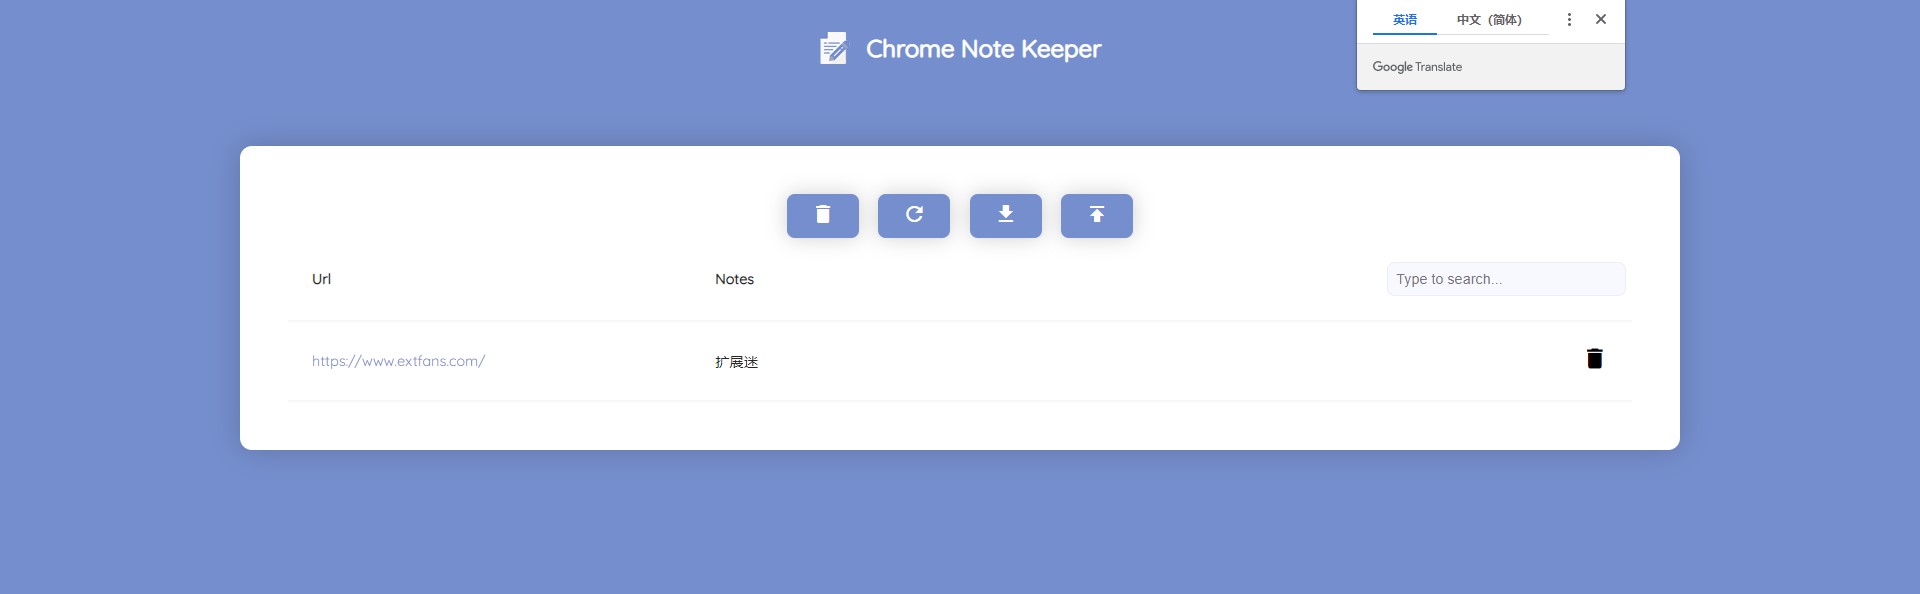 Chrome Note Keeper 插件使用教程